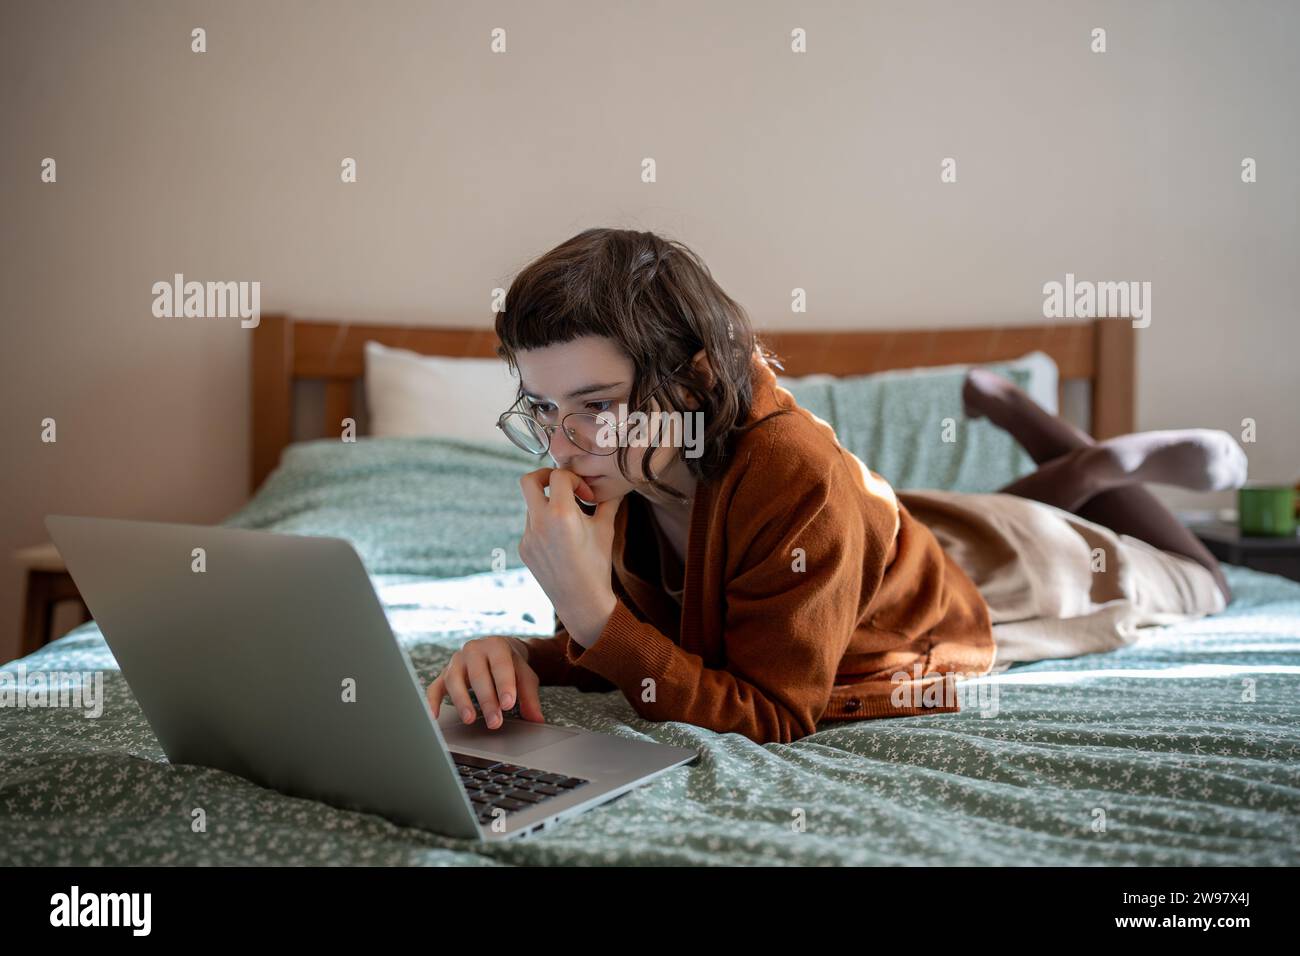 Concentrata adolescente che legge libri online, scorrendo i social network in Internet su un computer portatile Foto Stock